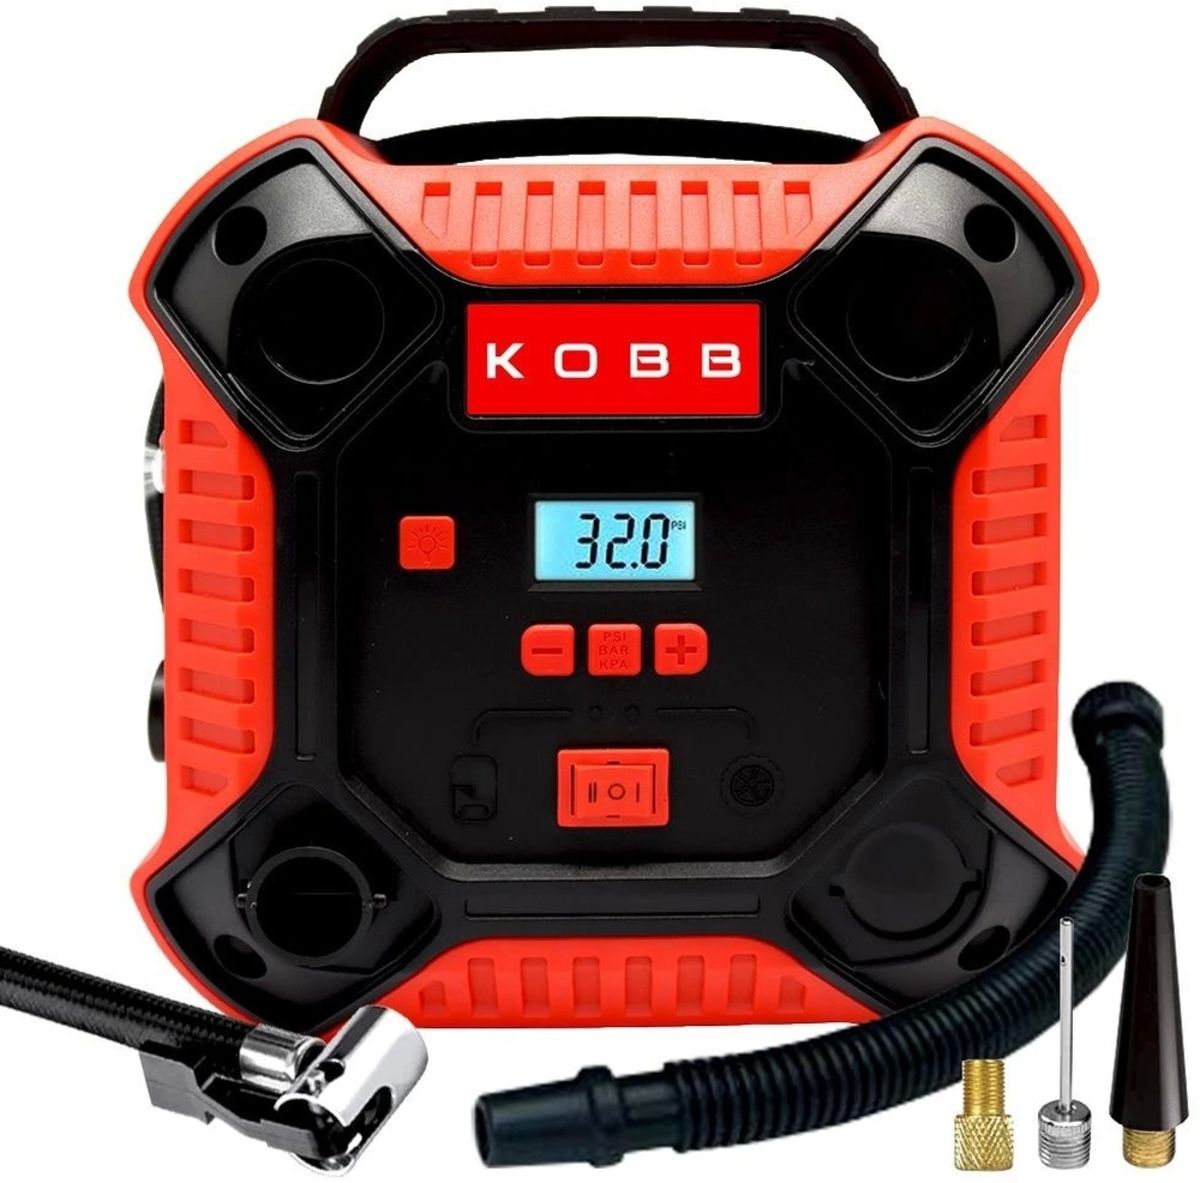 KOBB Kb250 12volt 160 Psı Dijital Basınç Göstergeli Lastik & Yatak Şişirme Pompası, Kırmızı/siyah Uyumlu